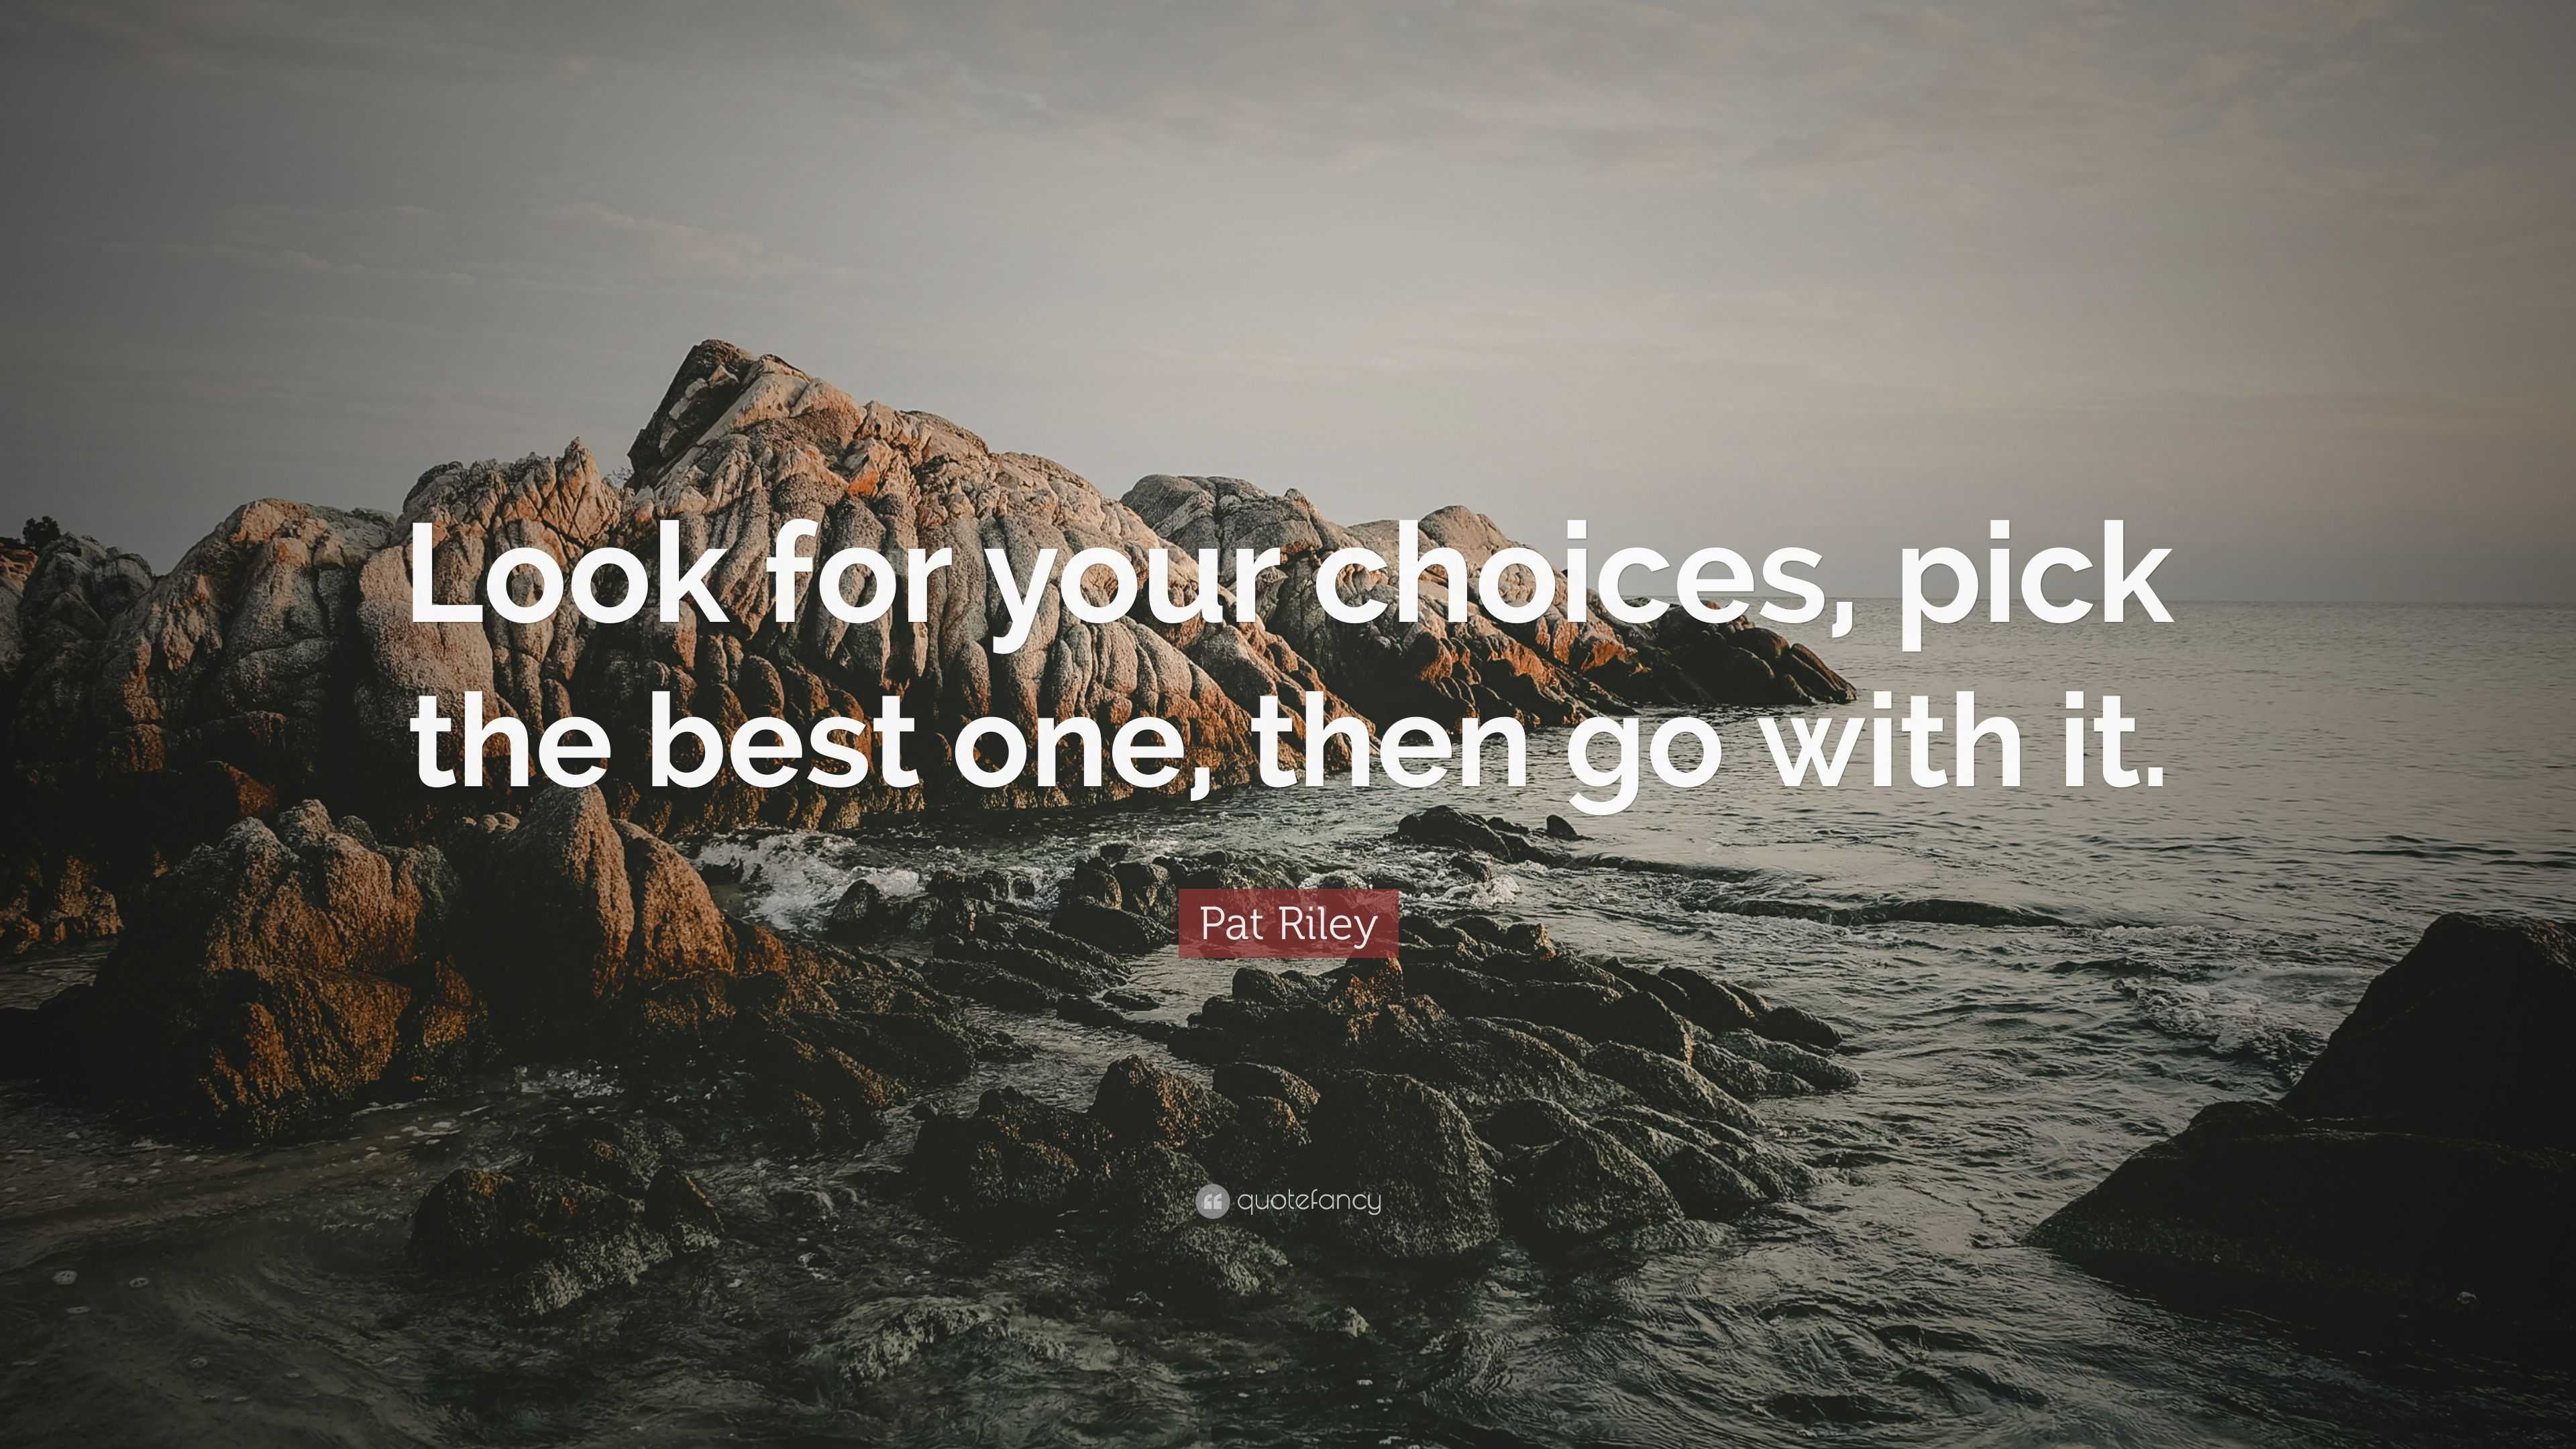 Best Choice - Your Choice